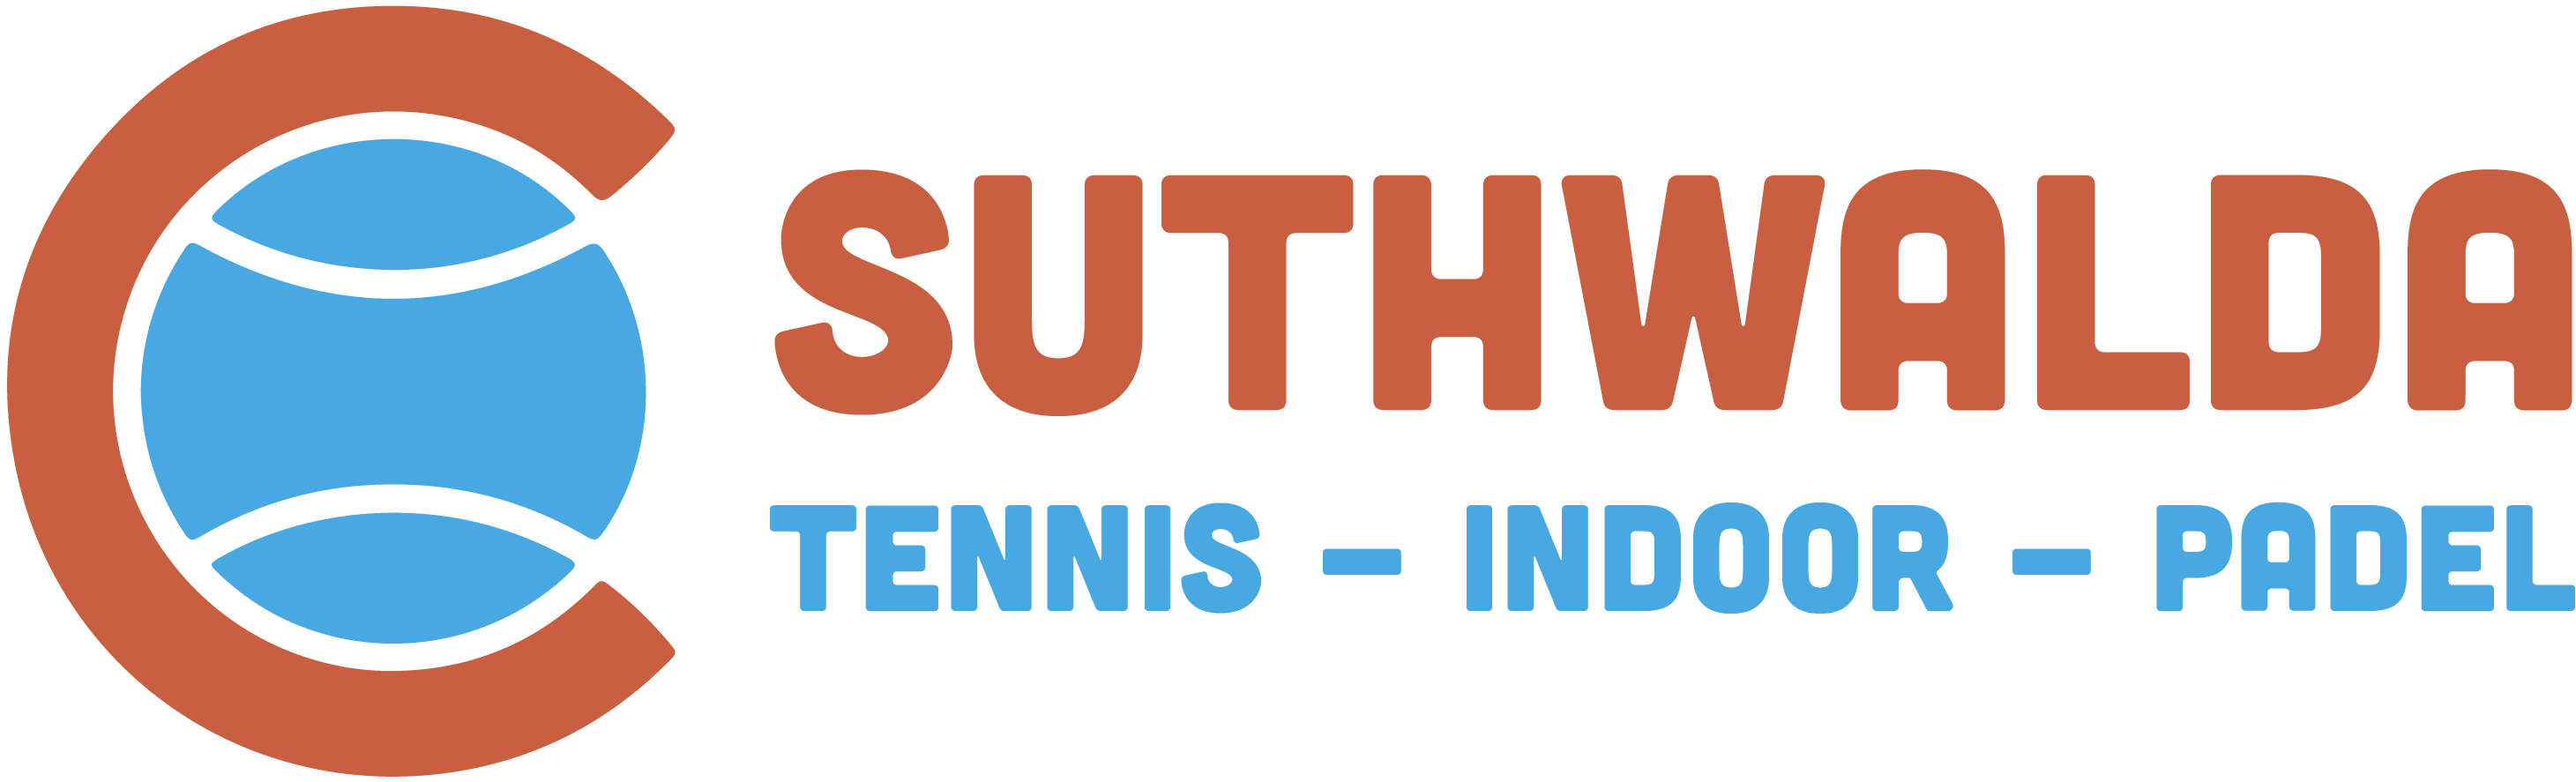 Logo T.C. Suthwalda